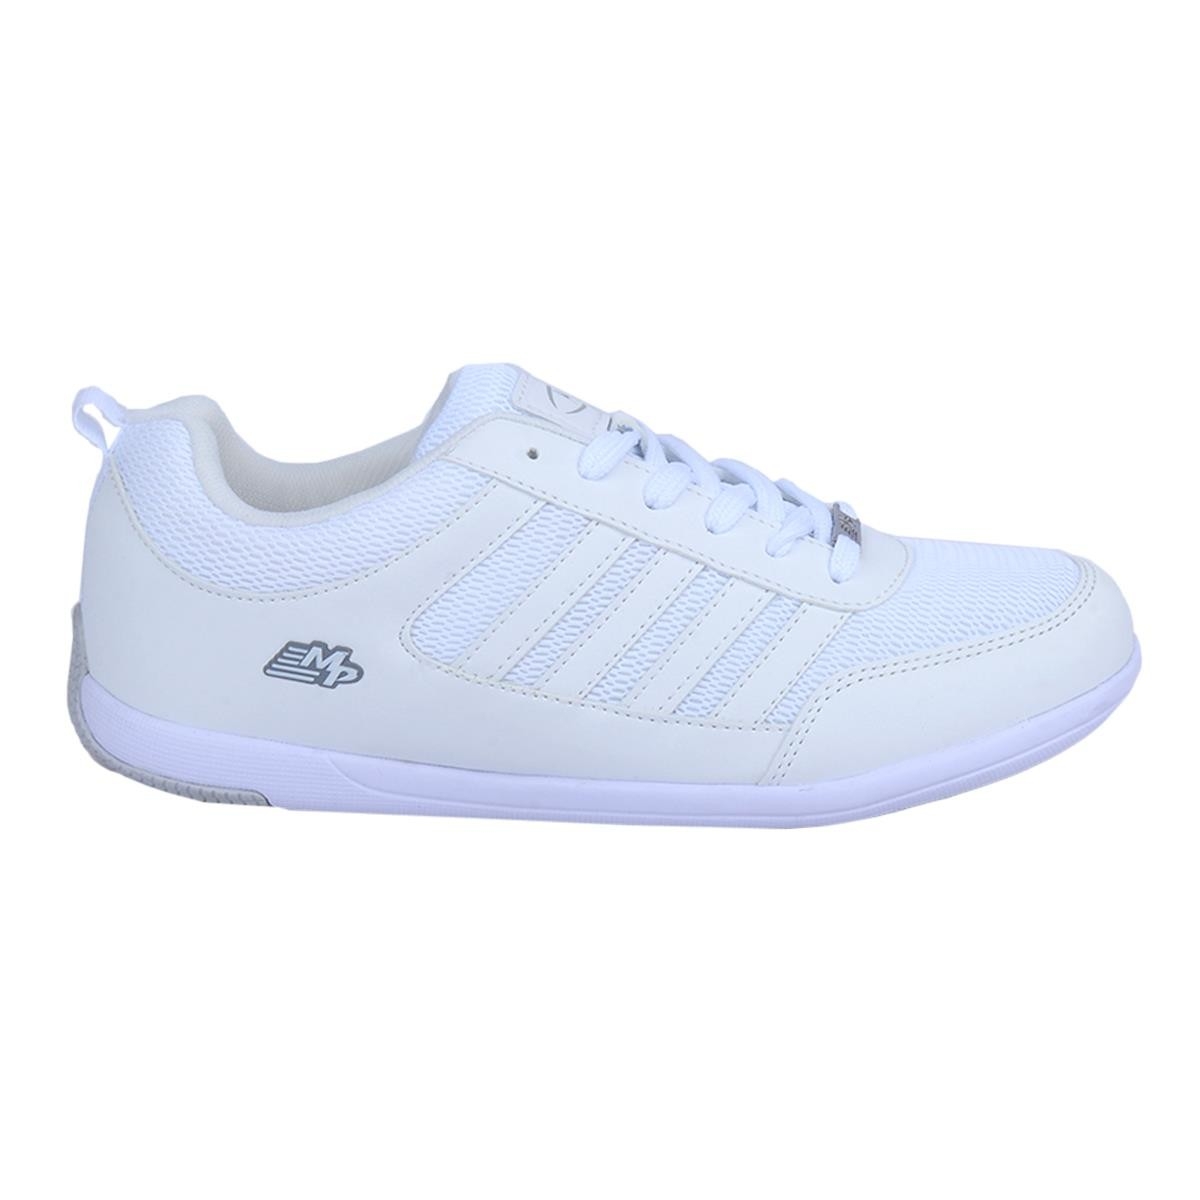 Flo 211-7320 Asper Beyaz Erkek Sneakers Spor Ayakkabı. 1